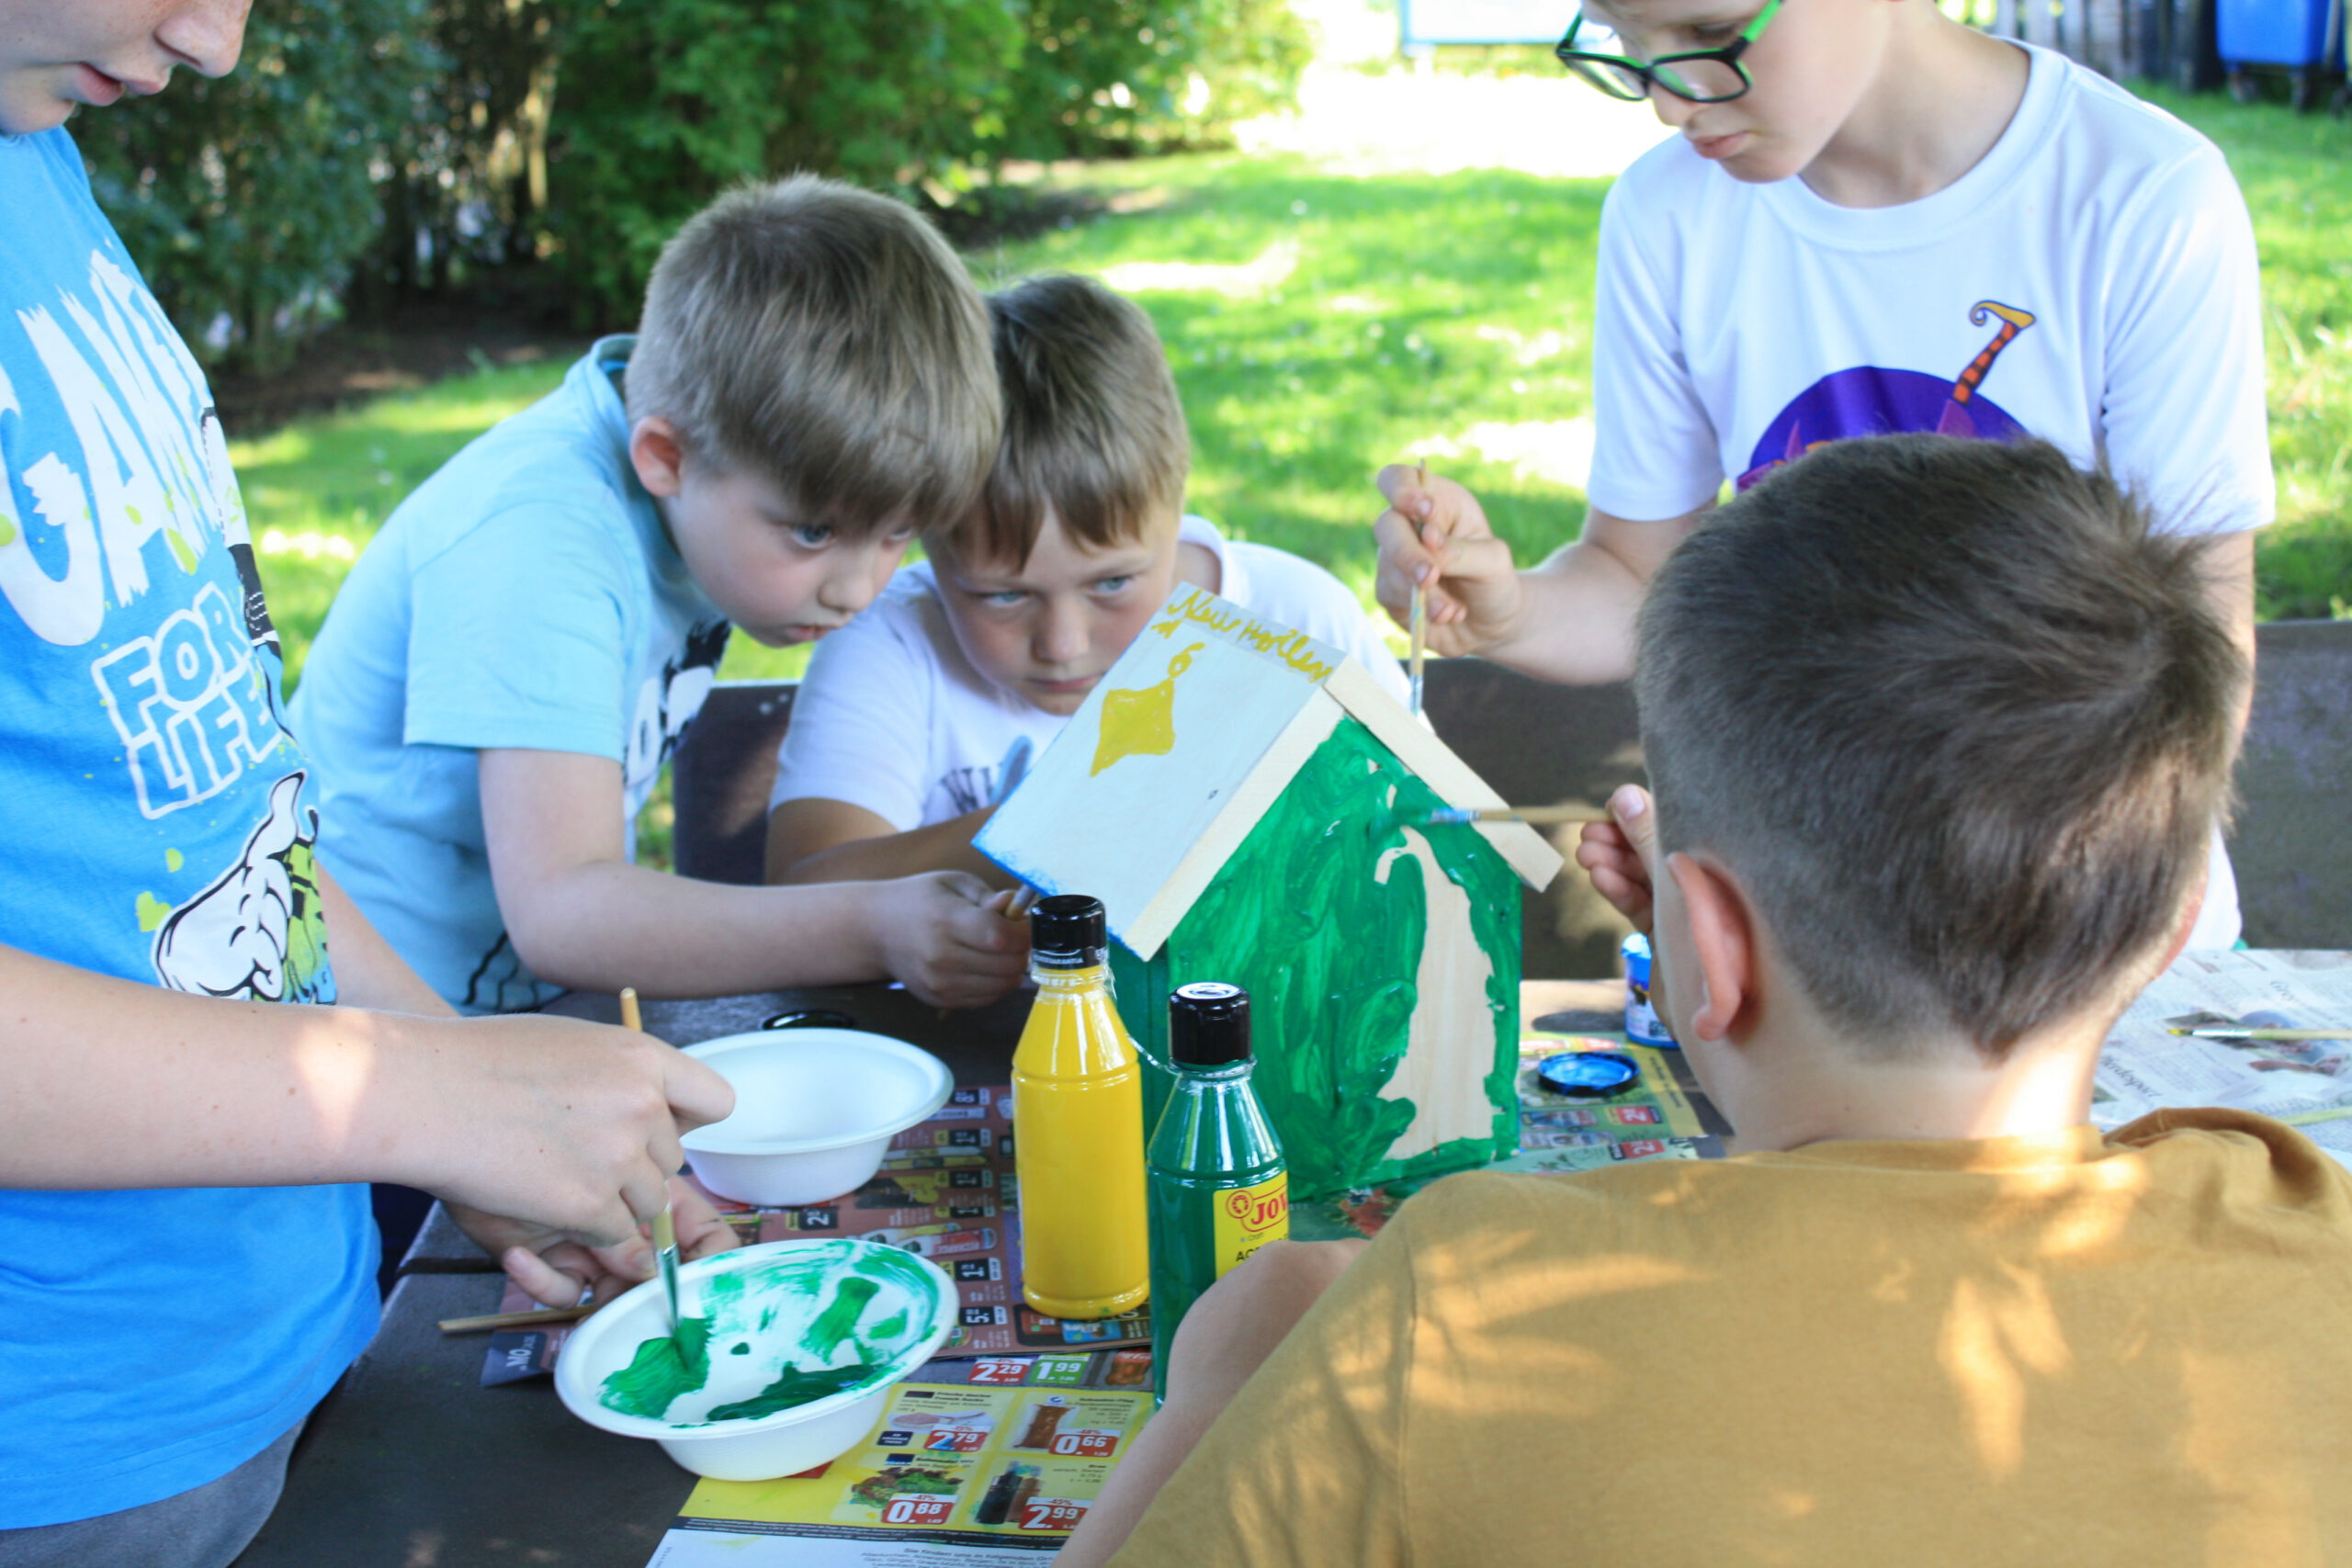 Kinder bemalen ein Vogelhaus mit bunten Farben